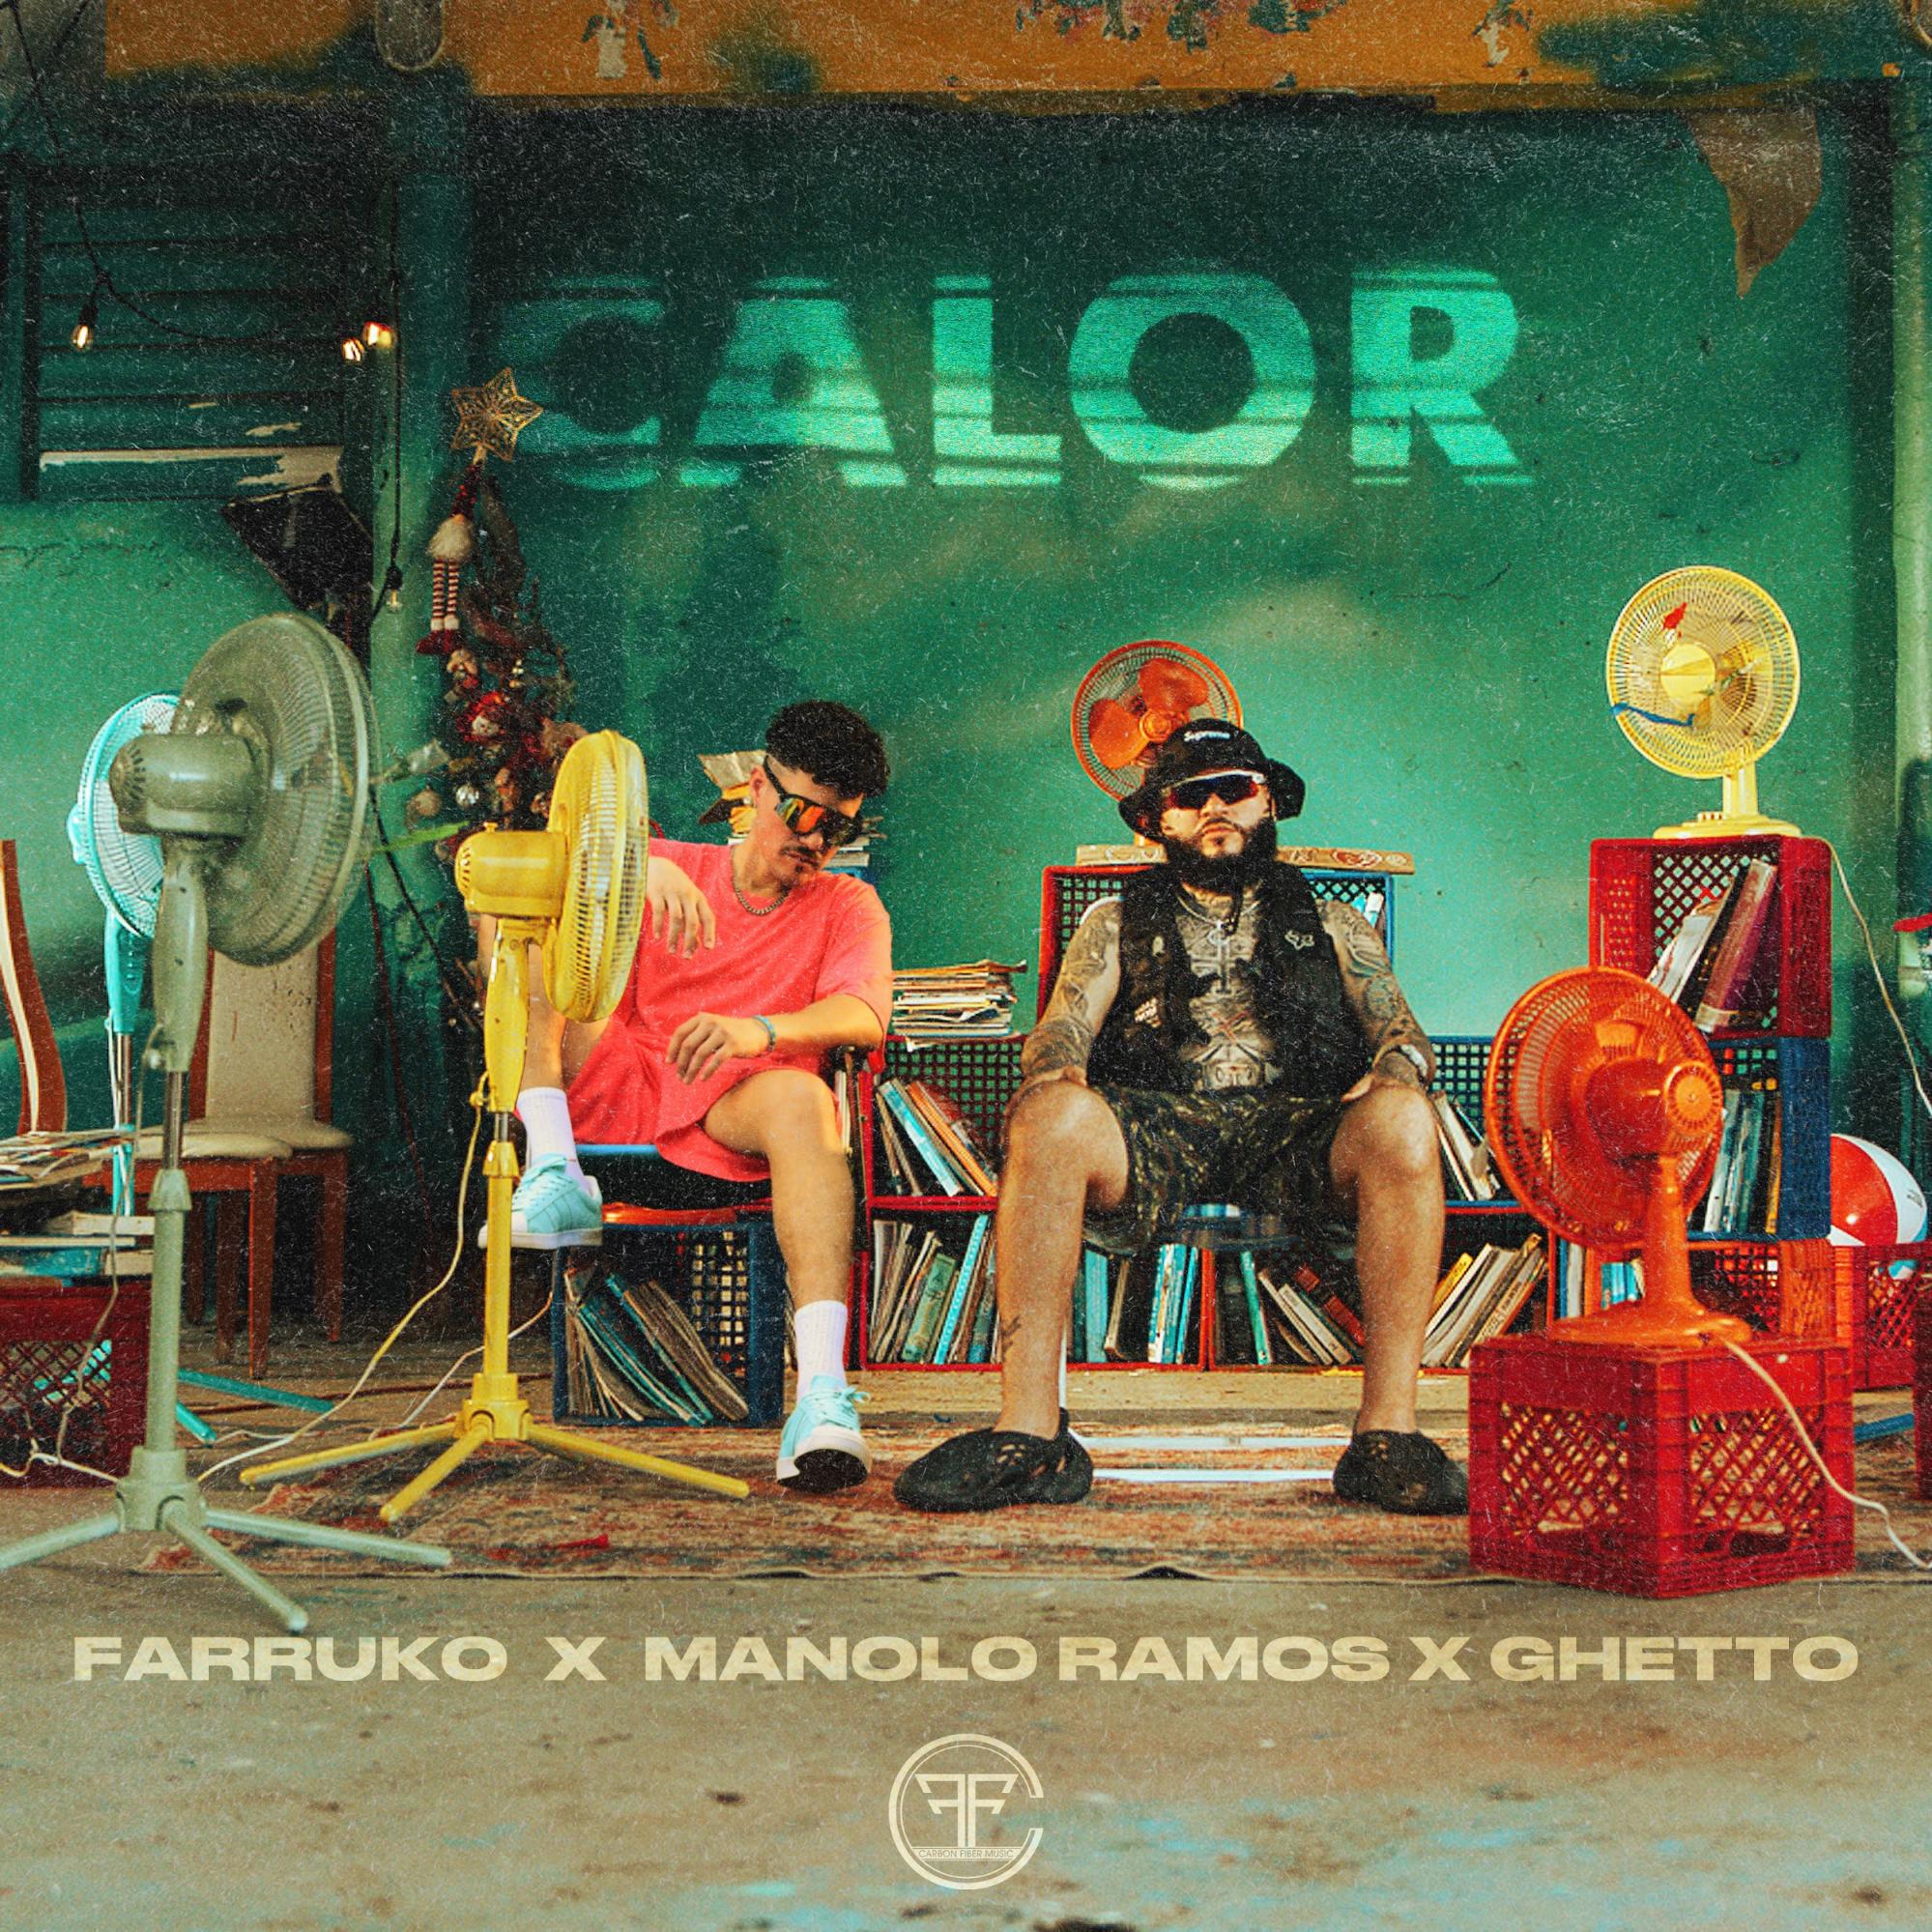 FARRUKO une fuerzas con Manolo Ramos en tema “Calor”